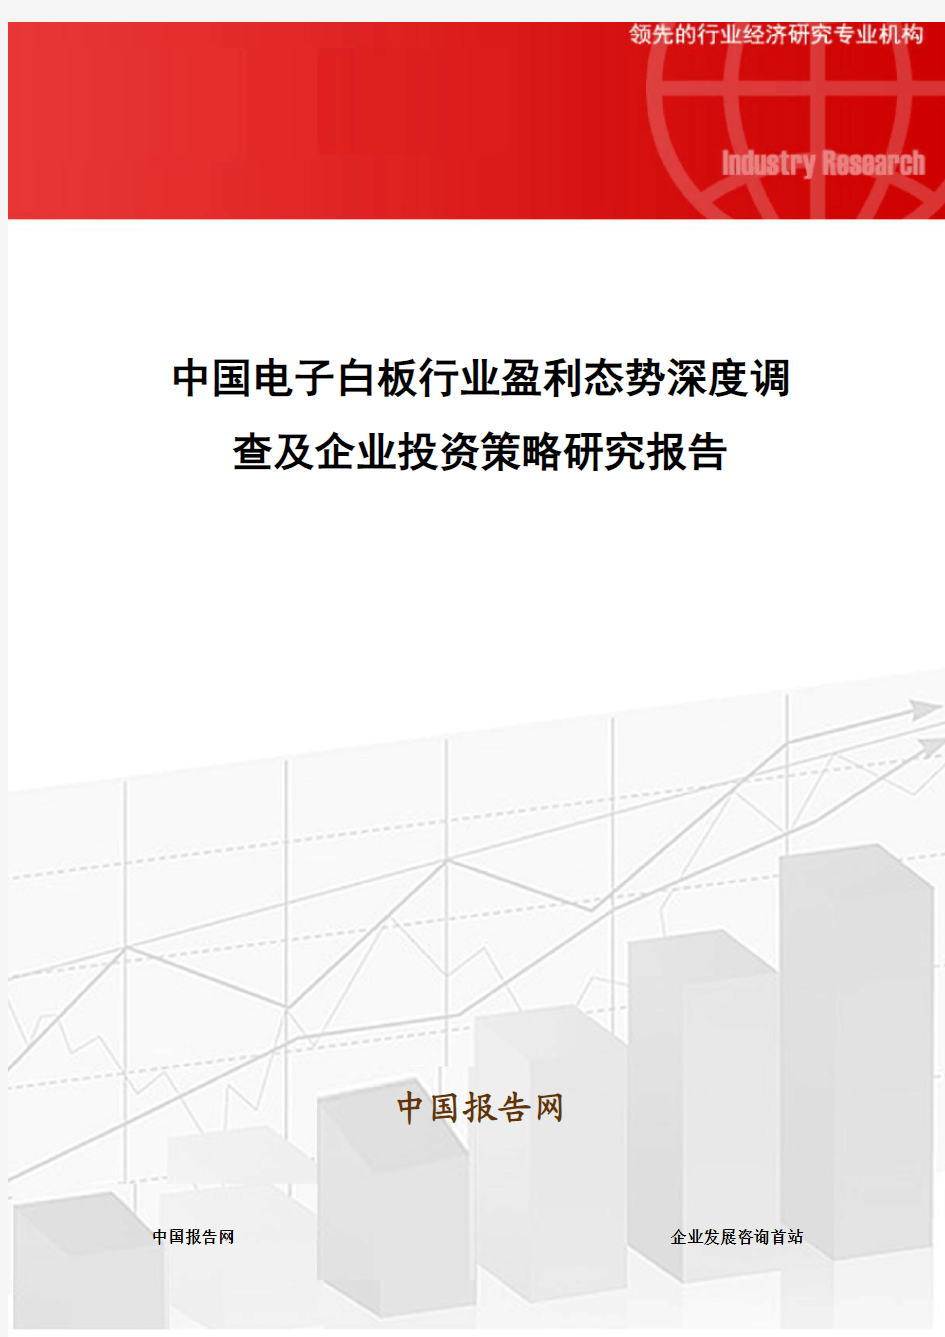 中国电子白板行业盈利态势深度调查及企业投资策略研究报告